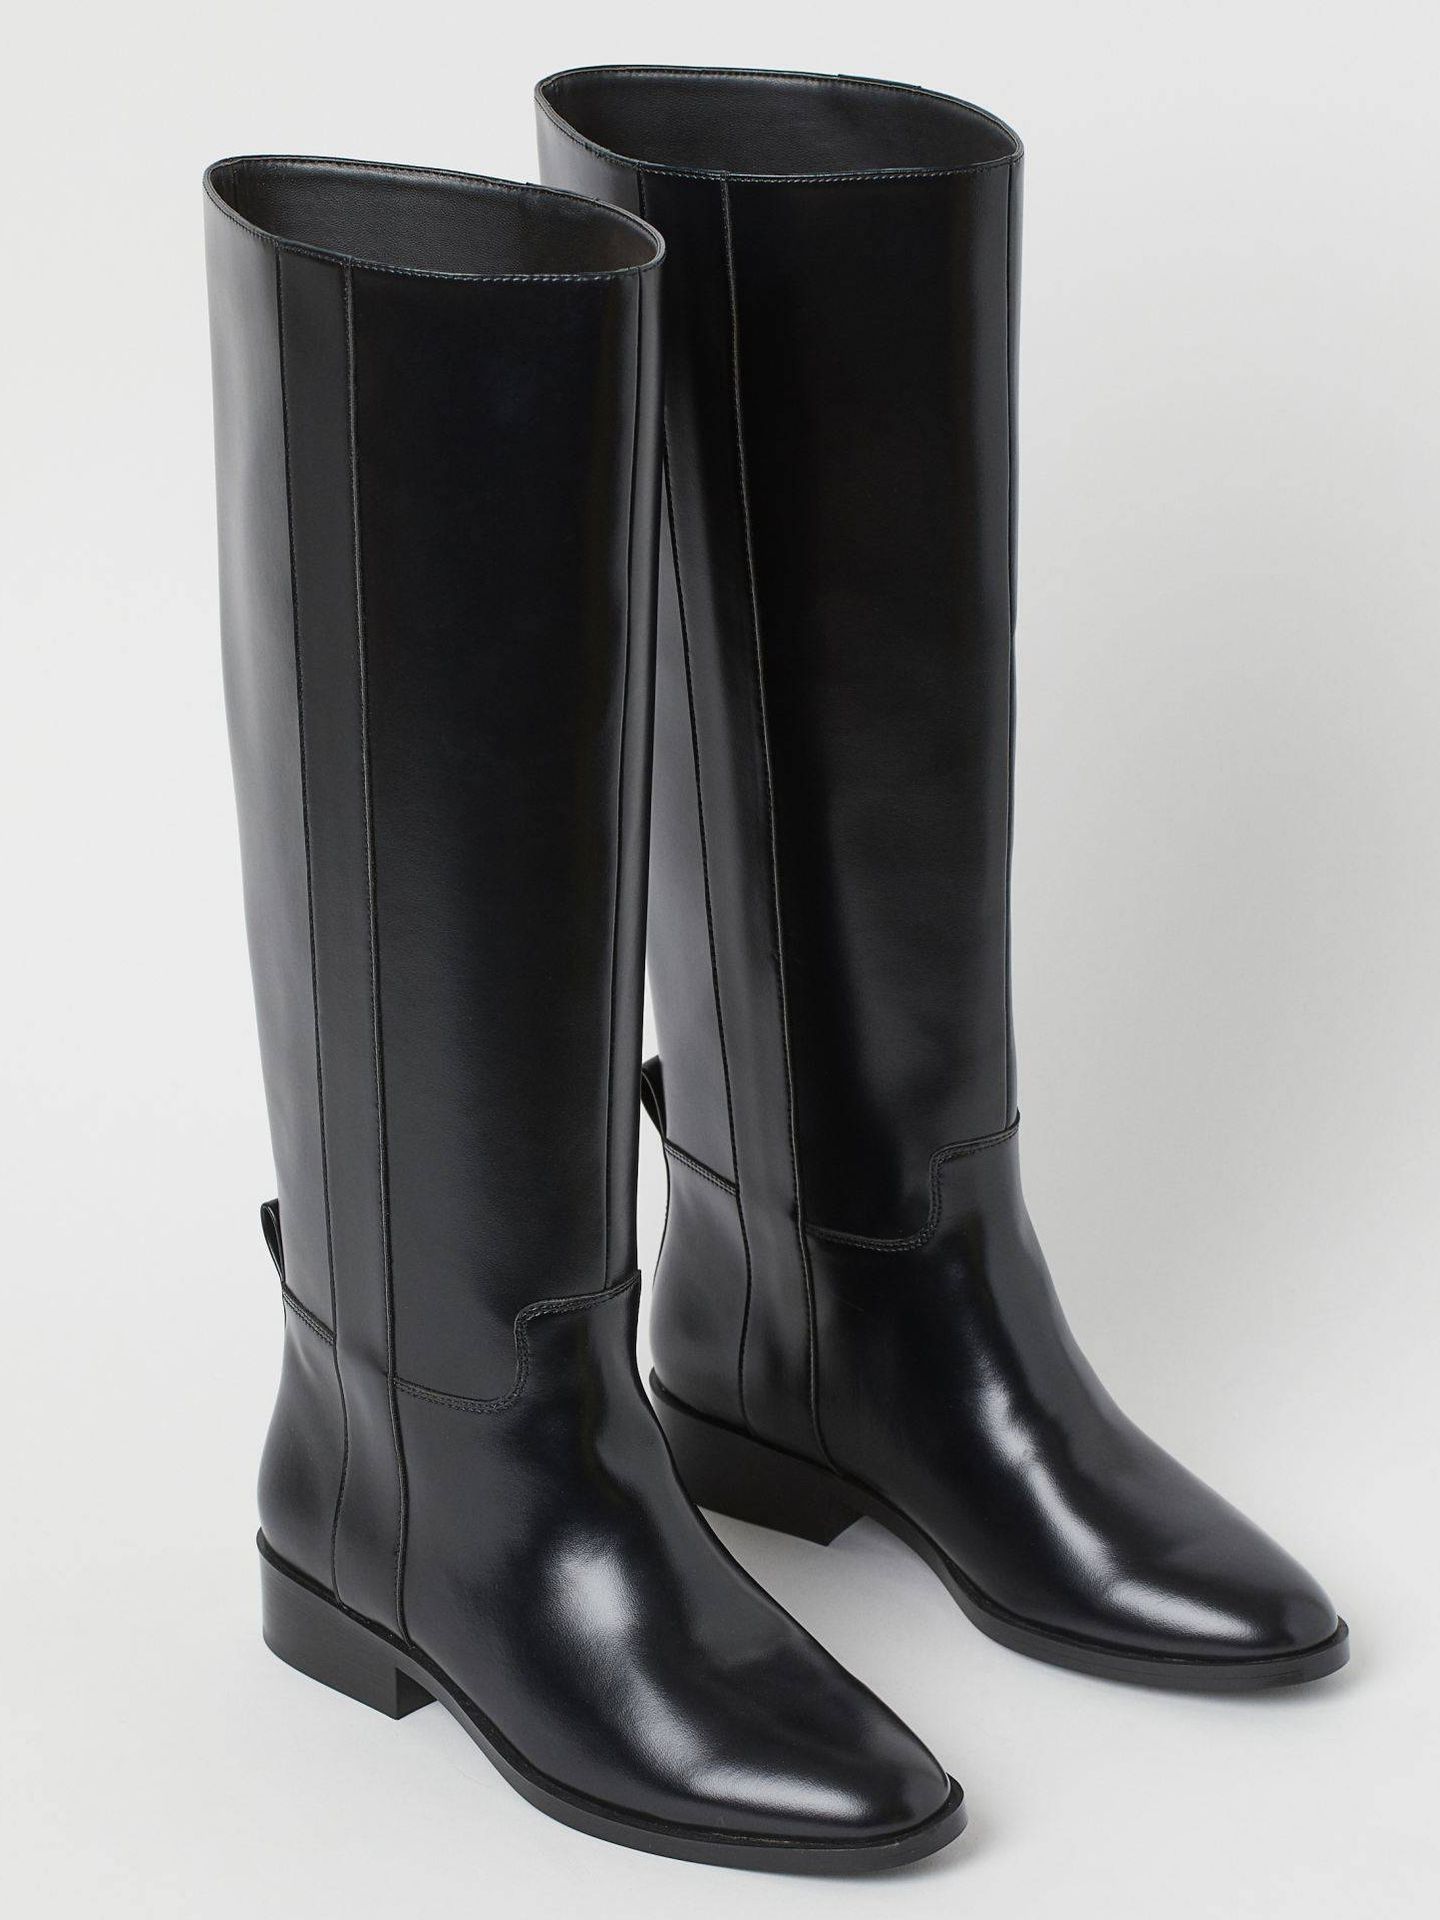 H&M tiene las botas negras sin tacón perfectas para fondo de